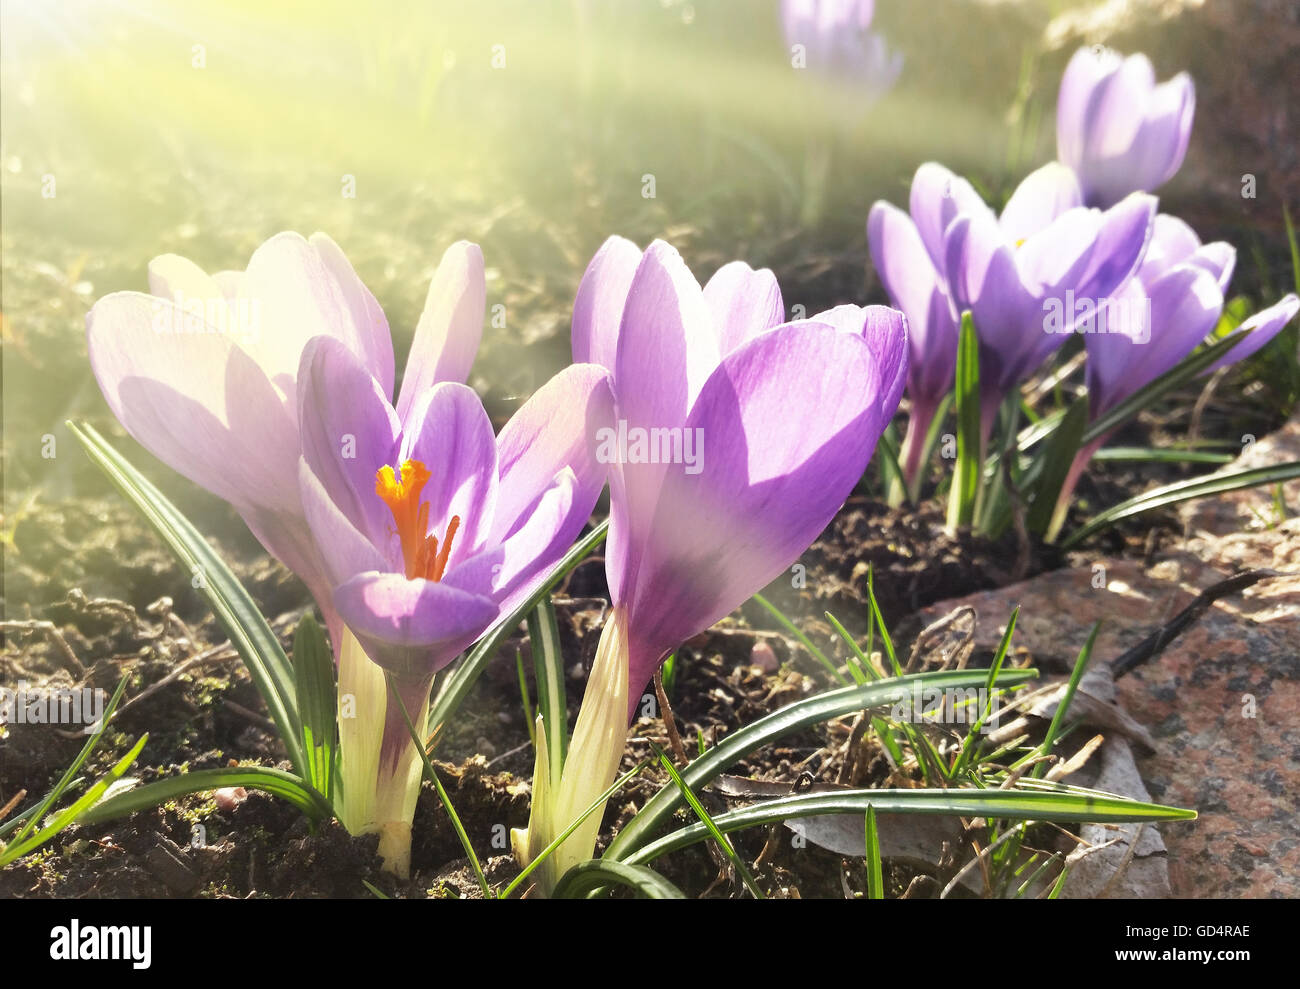 Crocus -blooming spring flowers. Stock Photo